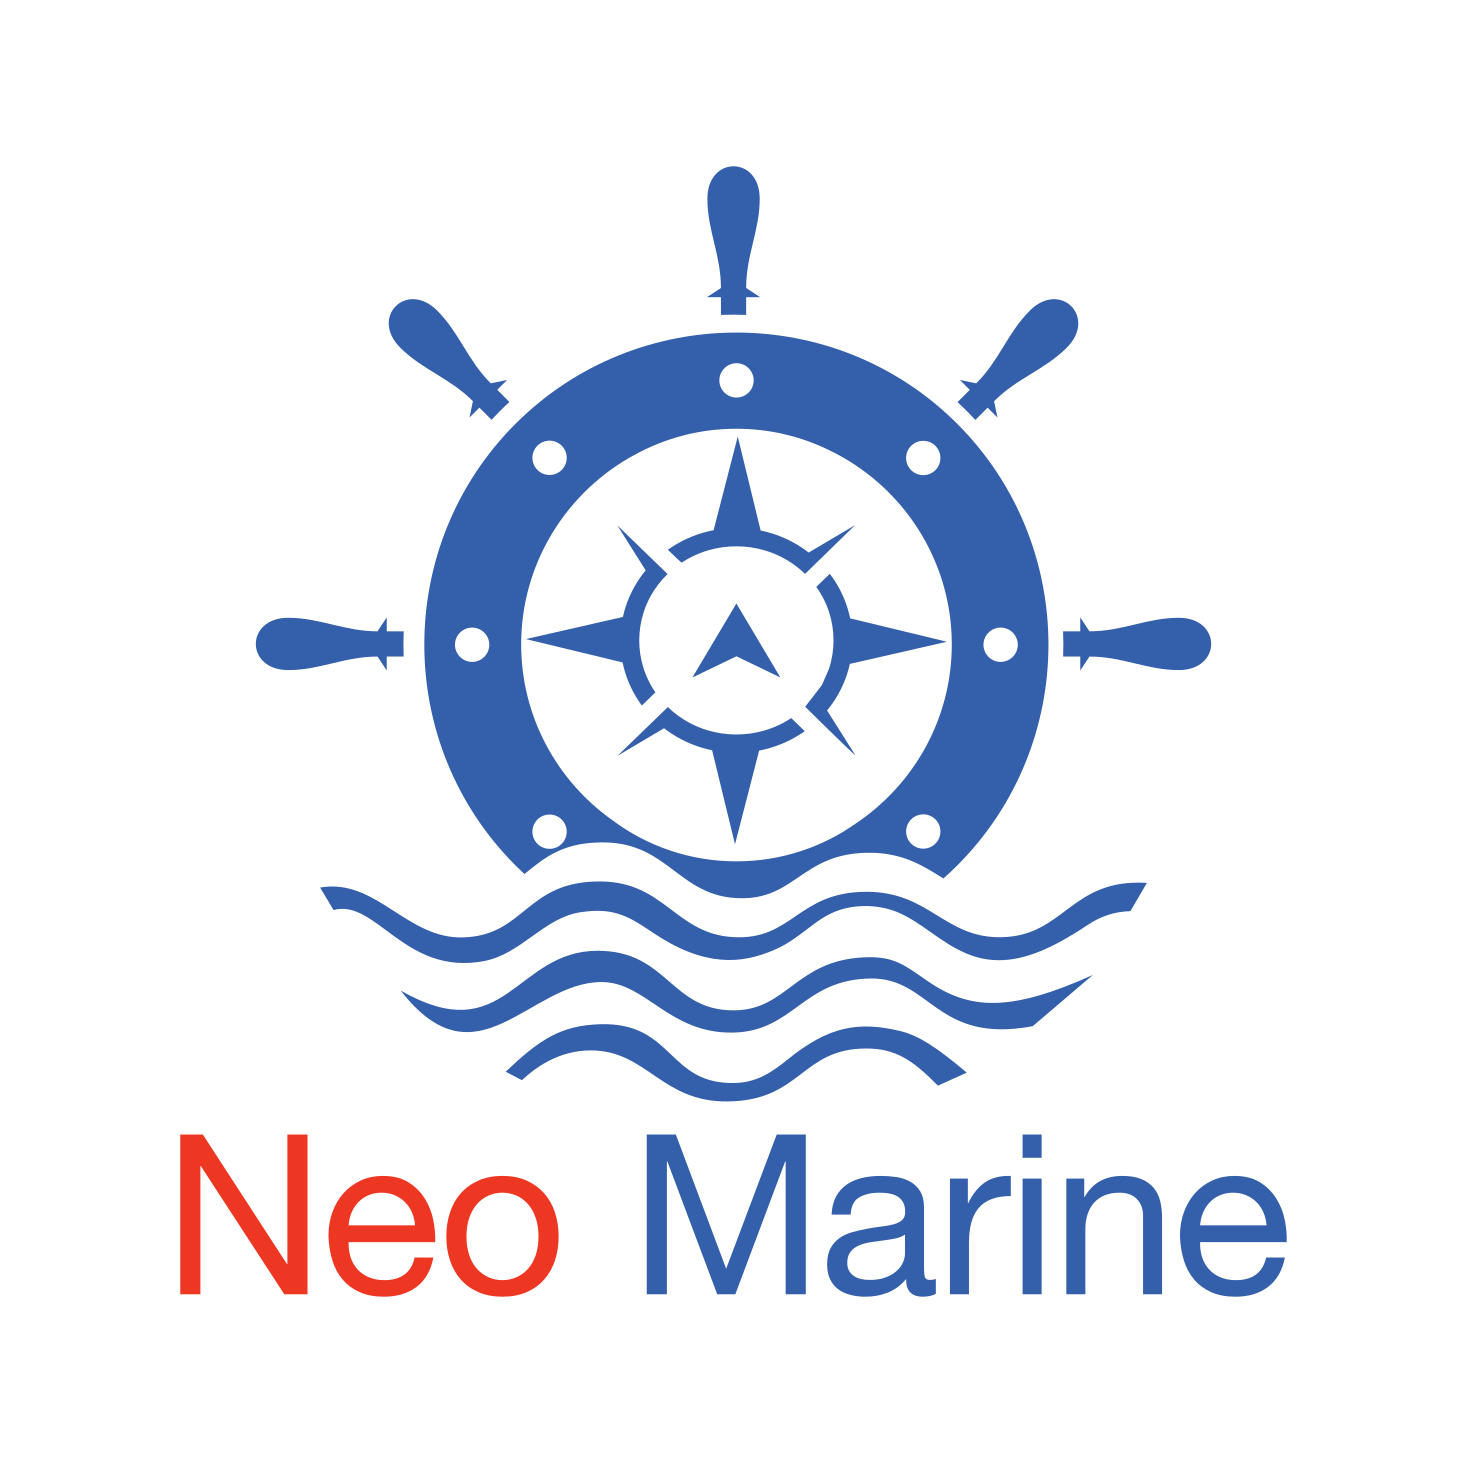 Neo Marine